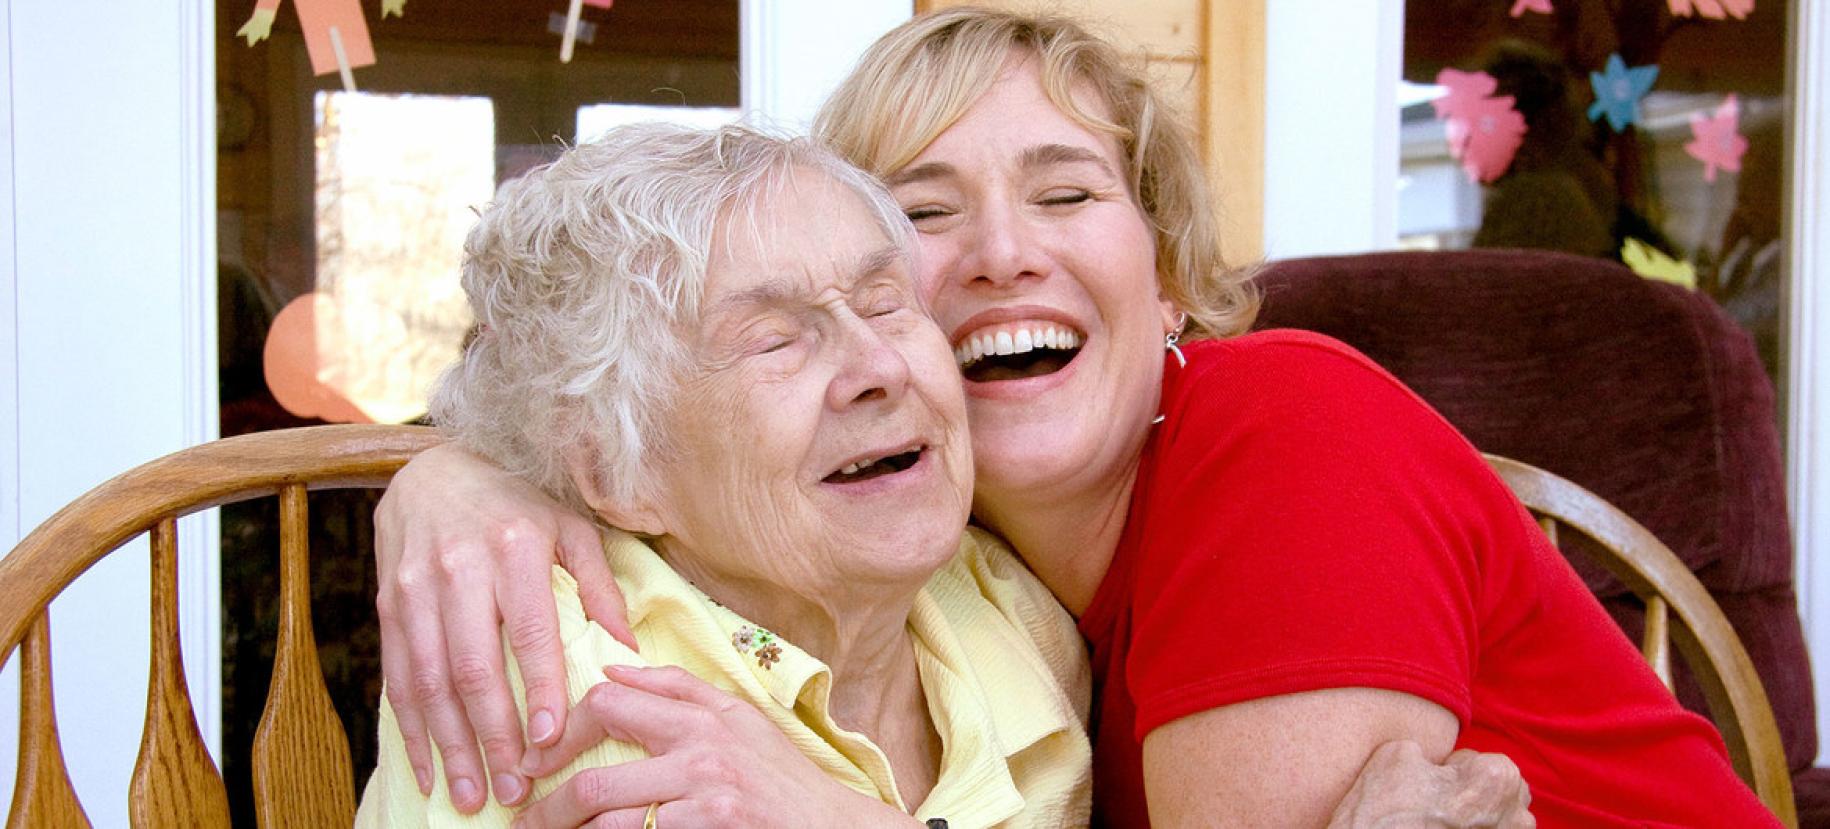 Une jeune femme blonde en t-shirt rouge et une femme âgée en polo jaune se prennent tendrement dans les bras l'une de l'autre, avec un grand sourire.